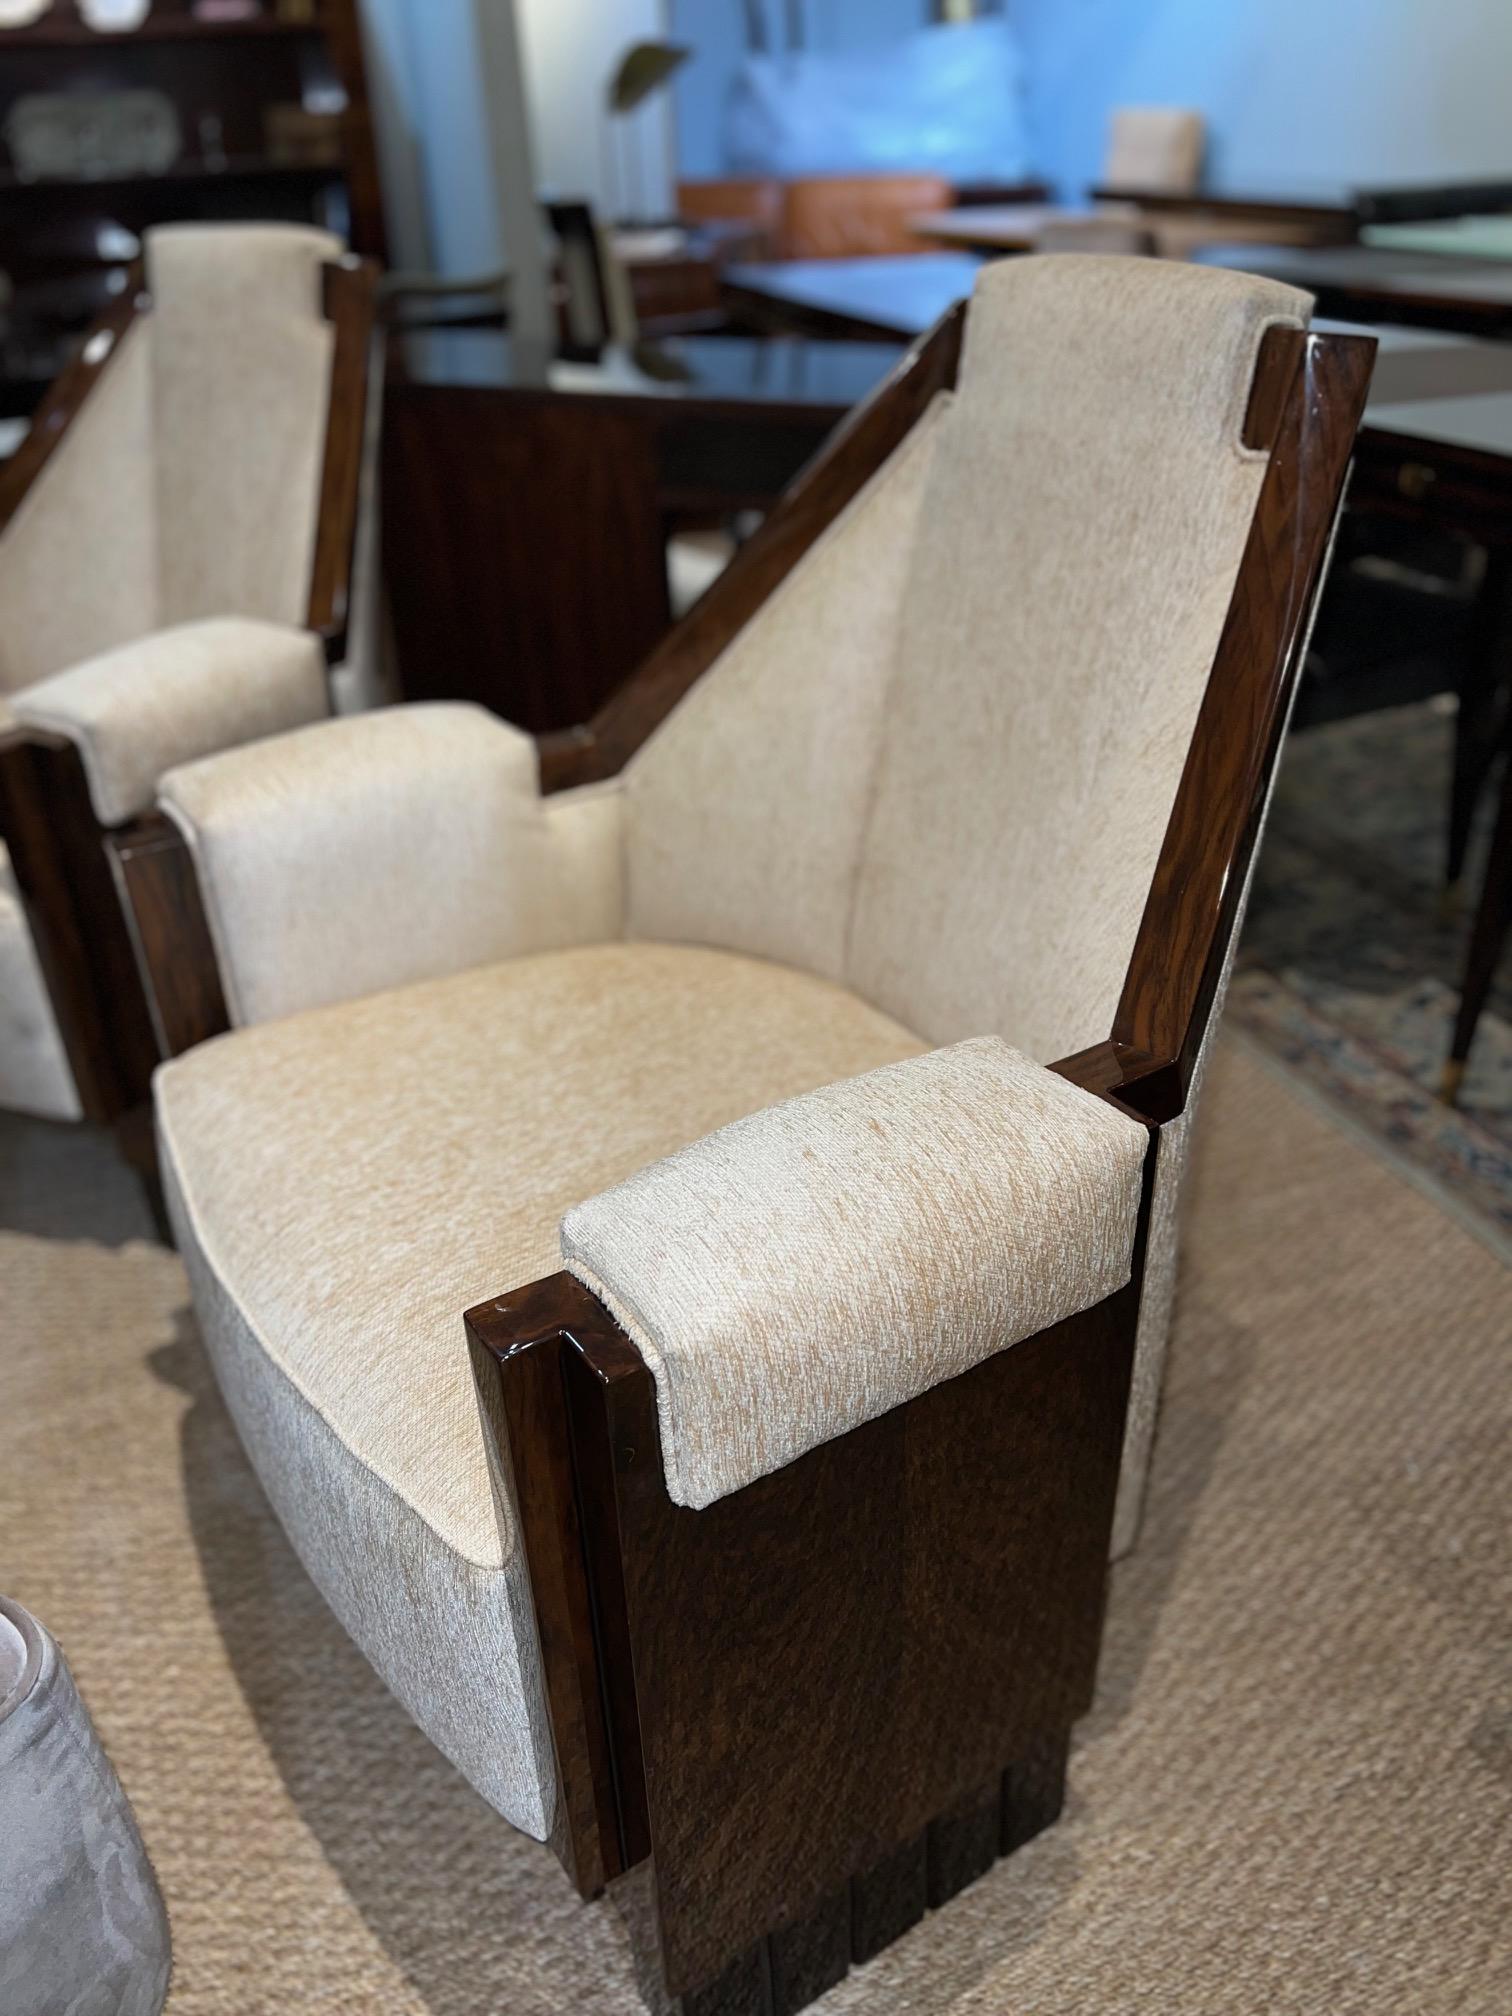 Une paire de chaises uniques est fabriquée en bois de noyer et retapissée de tissu velouté beige clair. La chaise est surélevée par 3 pieds rectangulaires. Le dossier de chaque chaise est décoré d'une planche en bois, qui met en valeur la beauté du